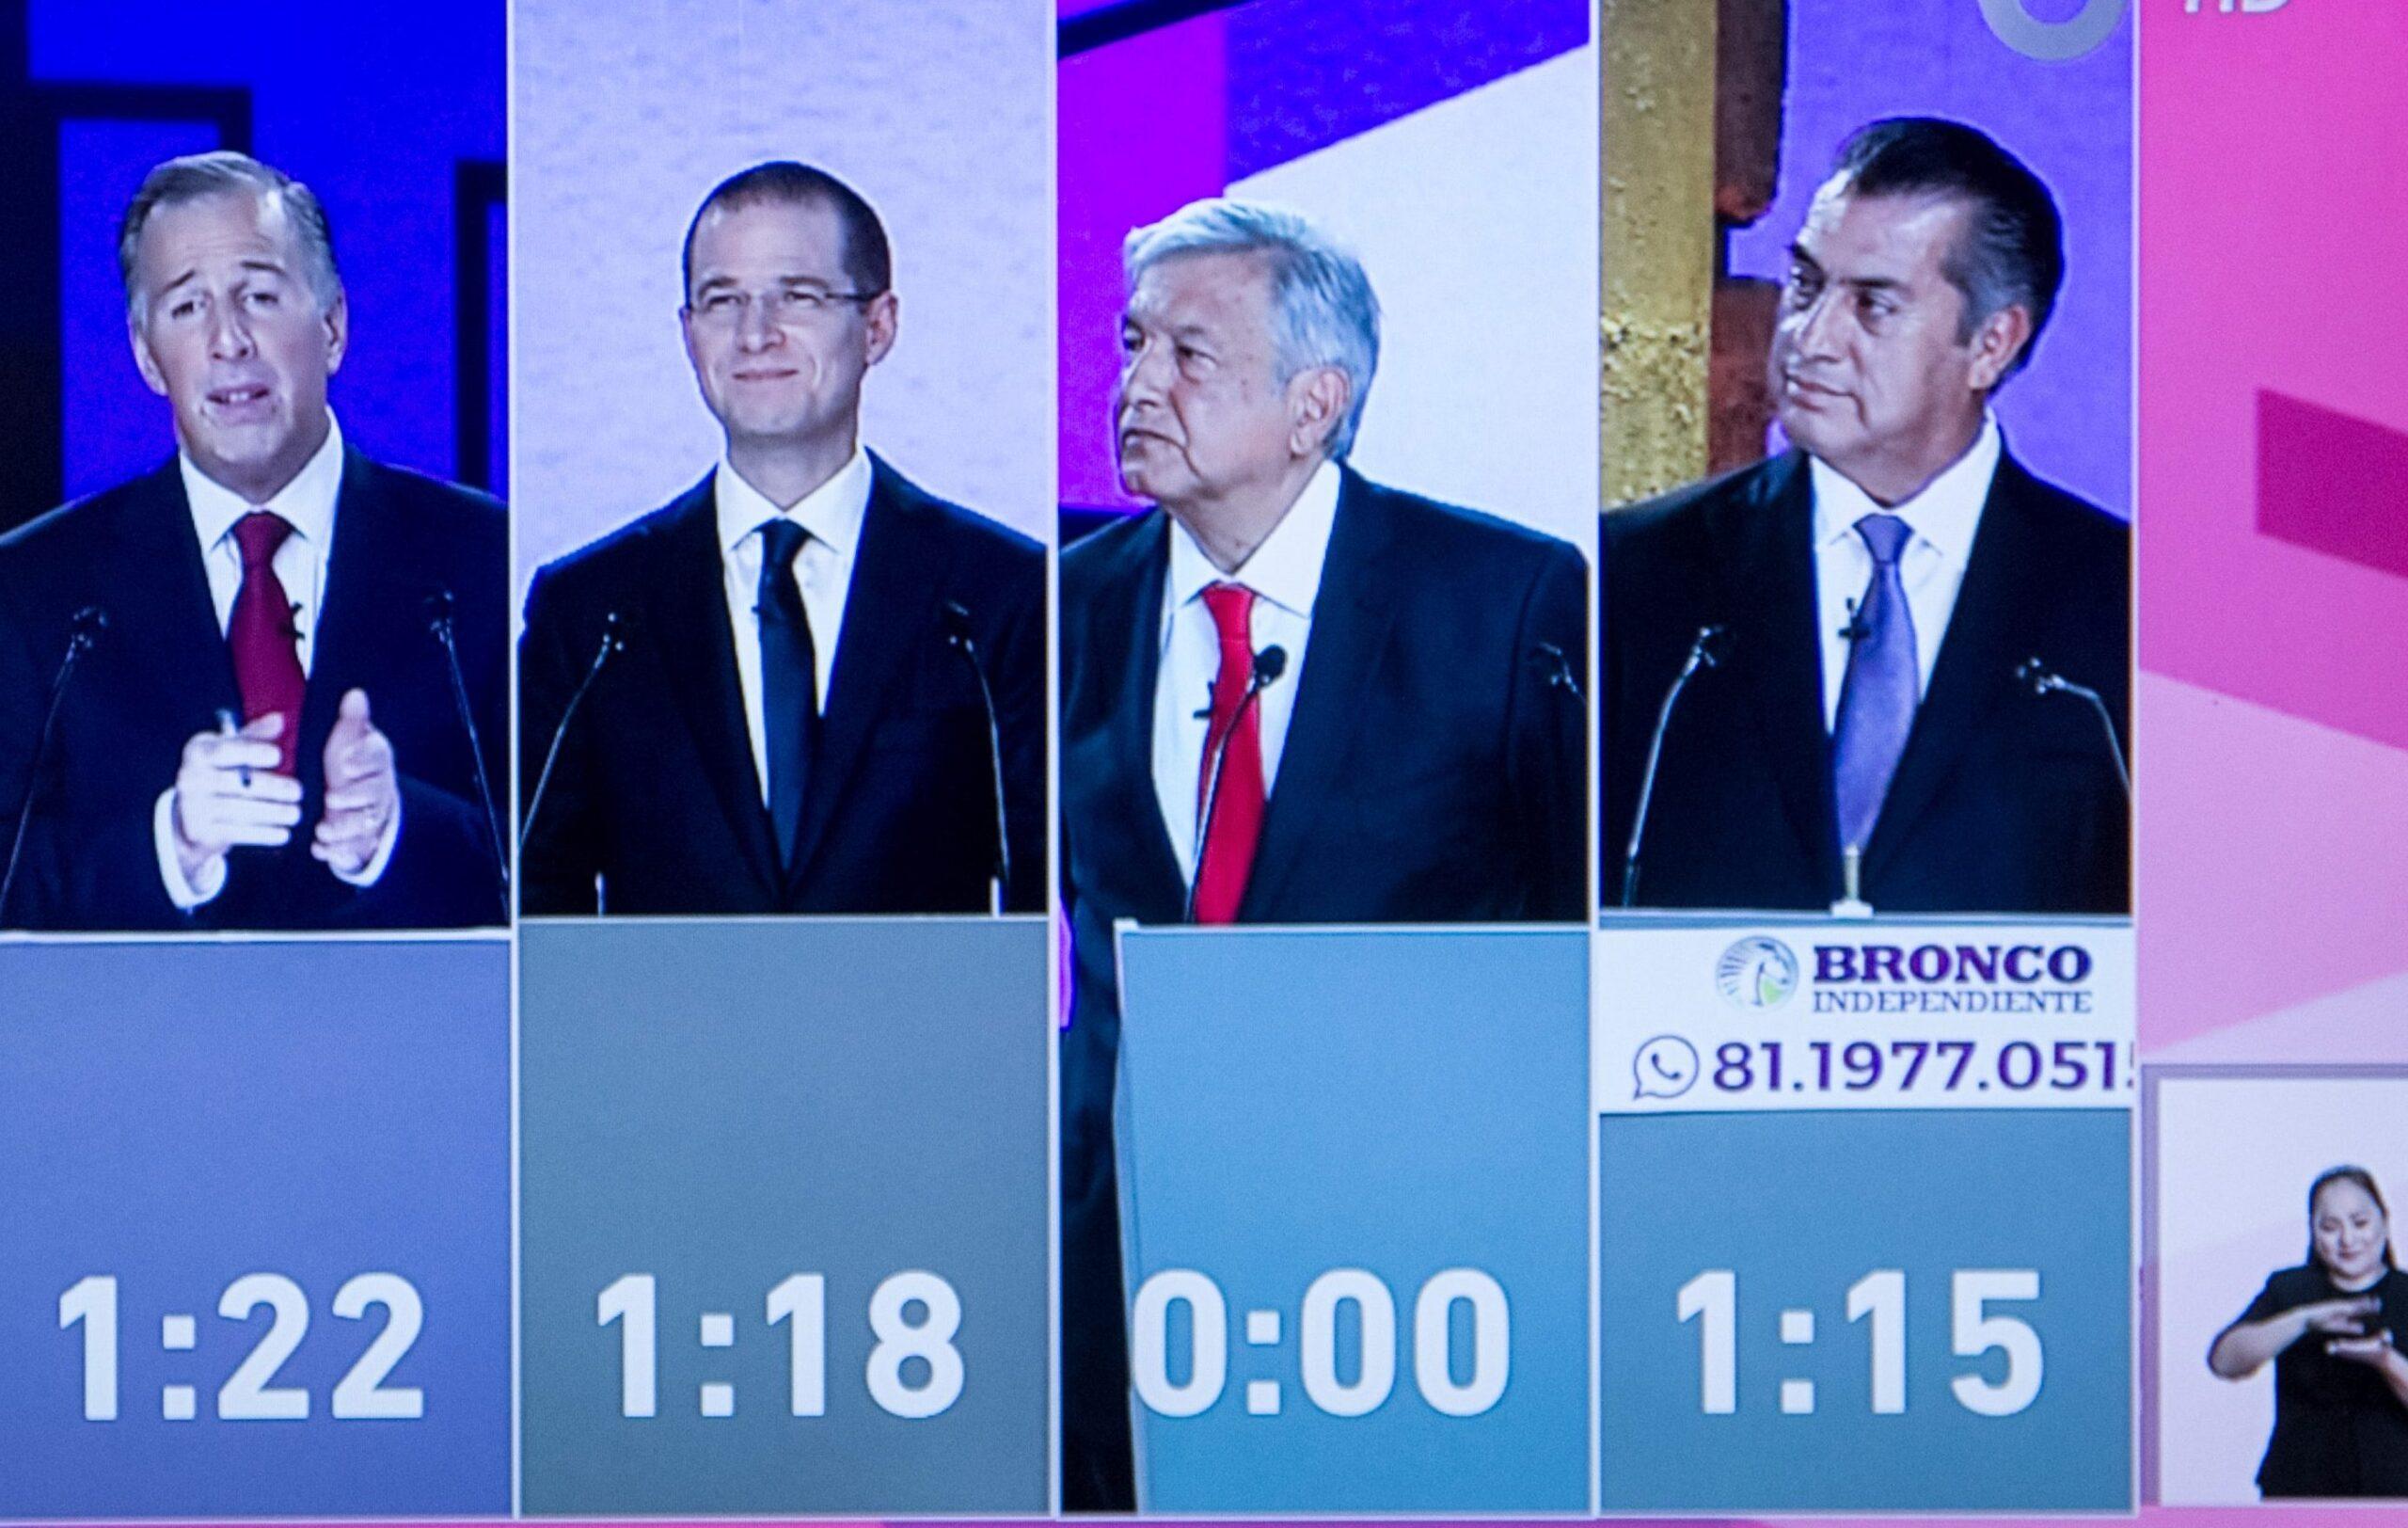 Horarios, turnos y temas: lo que debes saber del segundo debate presidencial